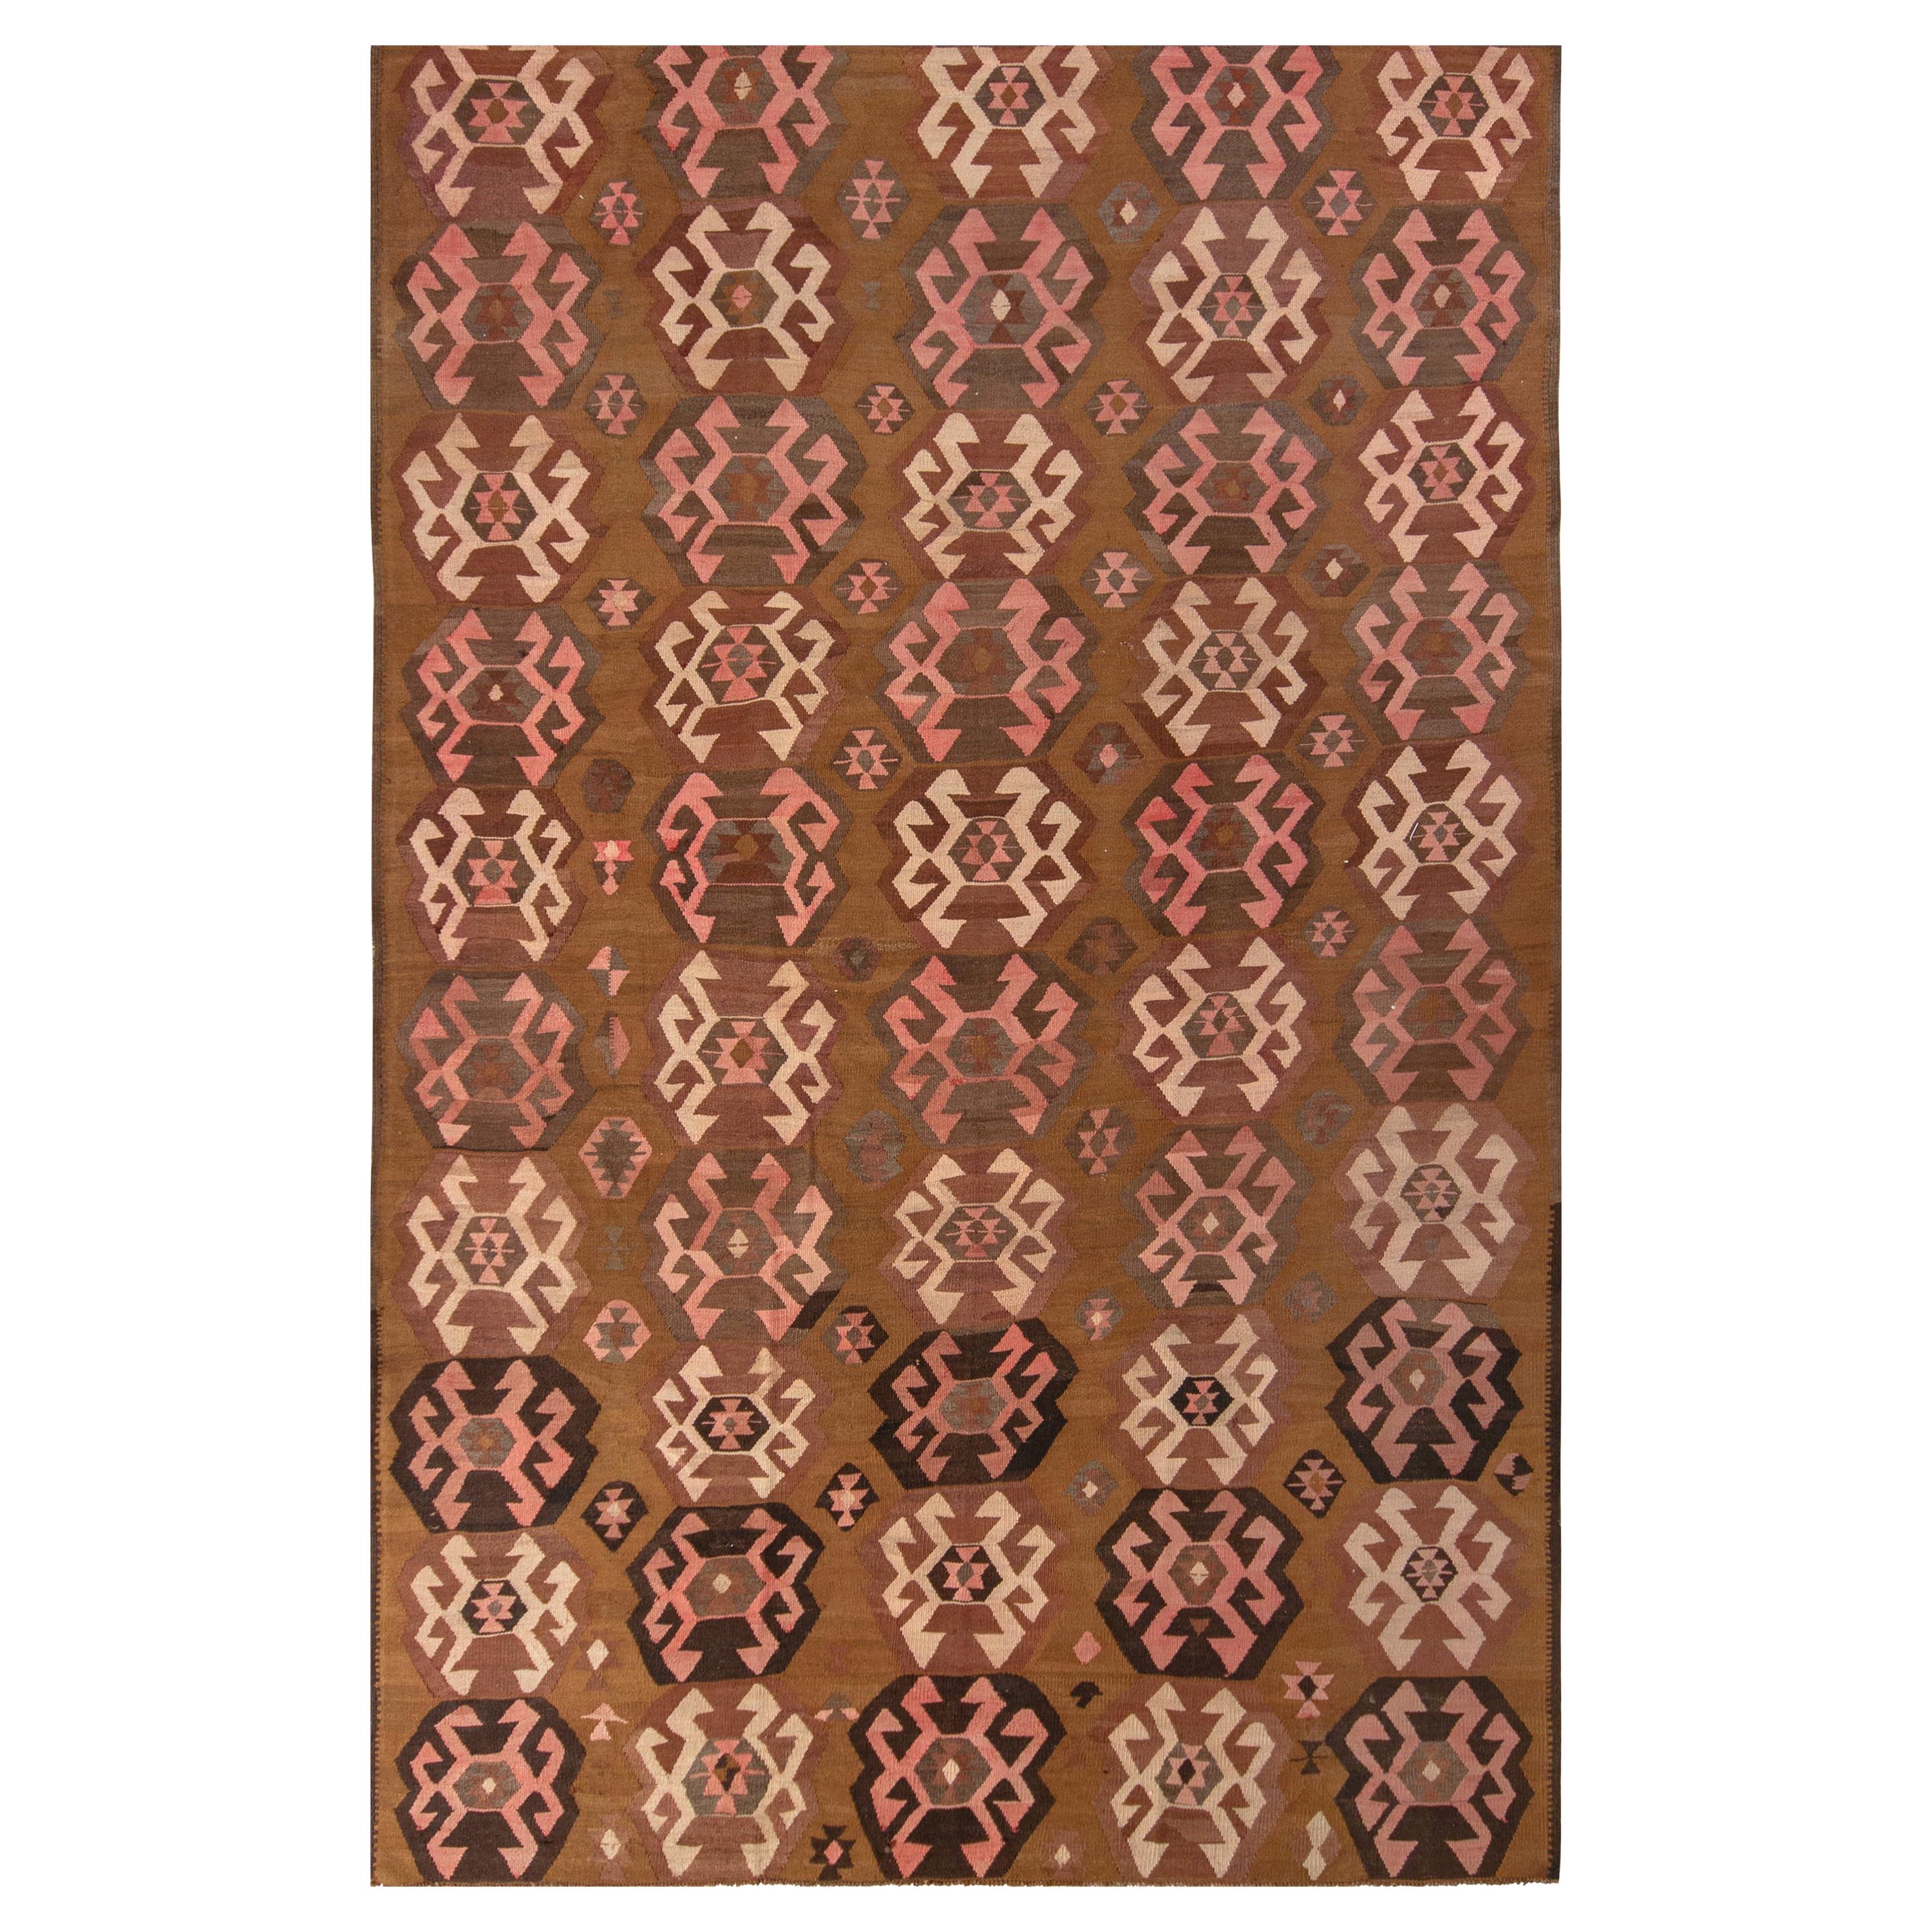 Handwoven Vintage Kilim Rug in Beige-Brown Geometric Pattern by Rug & Kilim For Sale